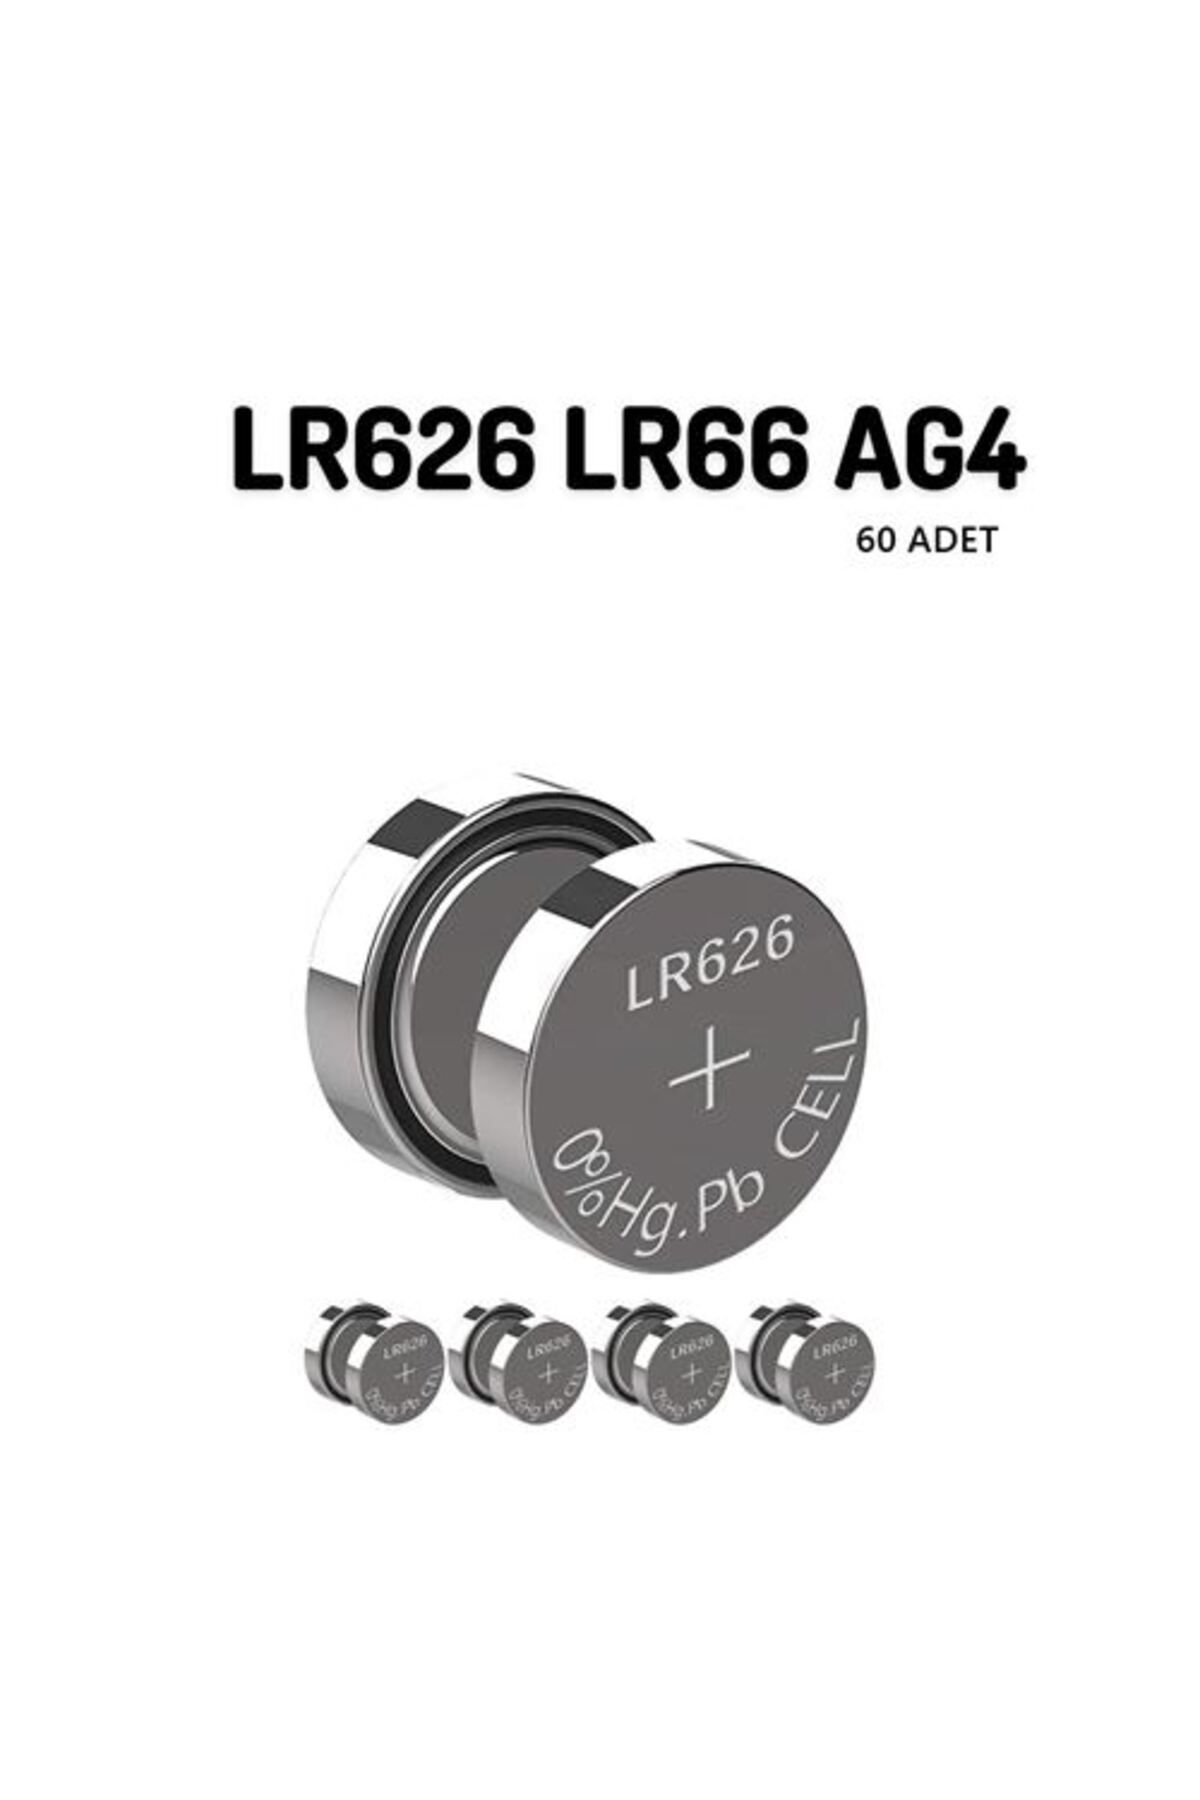 Transformacion 50+10 ADET LR626 LR66 AG4 1.55V Alkaline Pil 716934